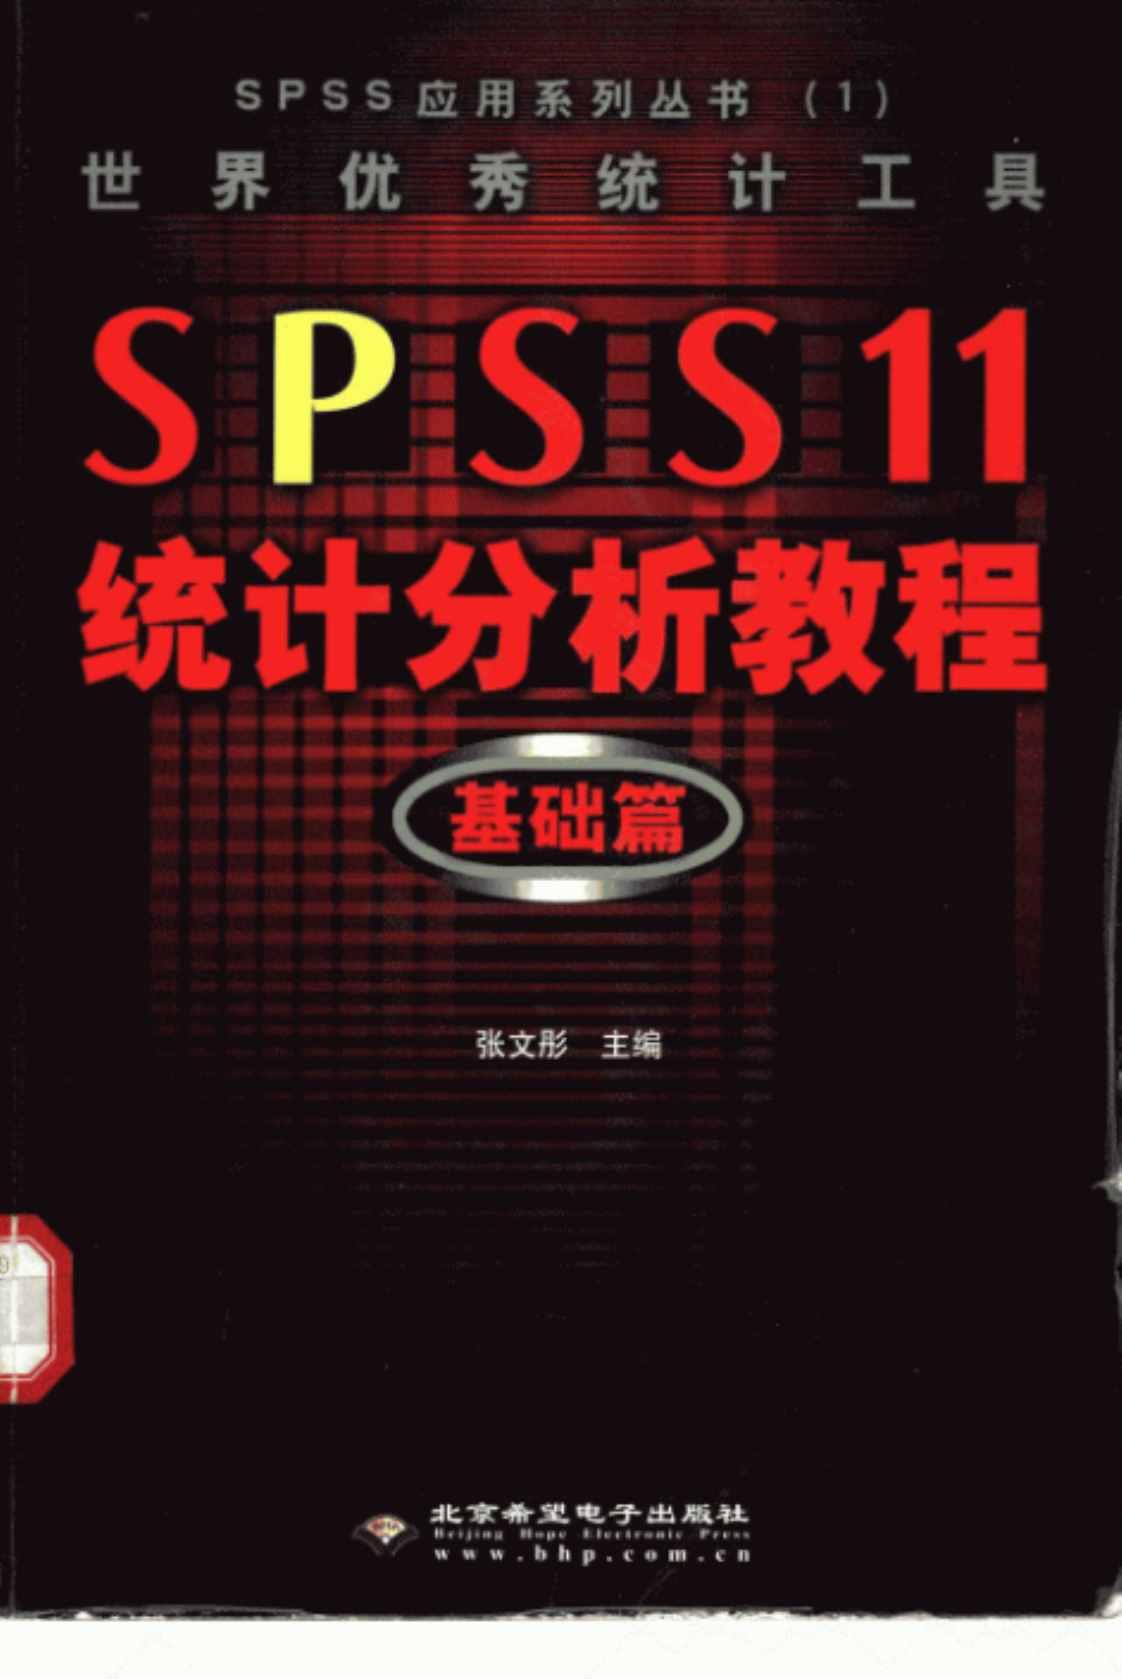 [世界优秀统计工具SPSS 11.0统计分析教程(基础篇)][张文彤(主编)]高清PDF电子书下载